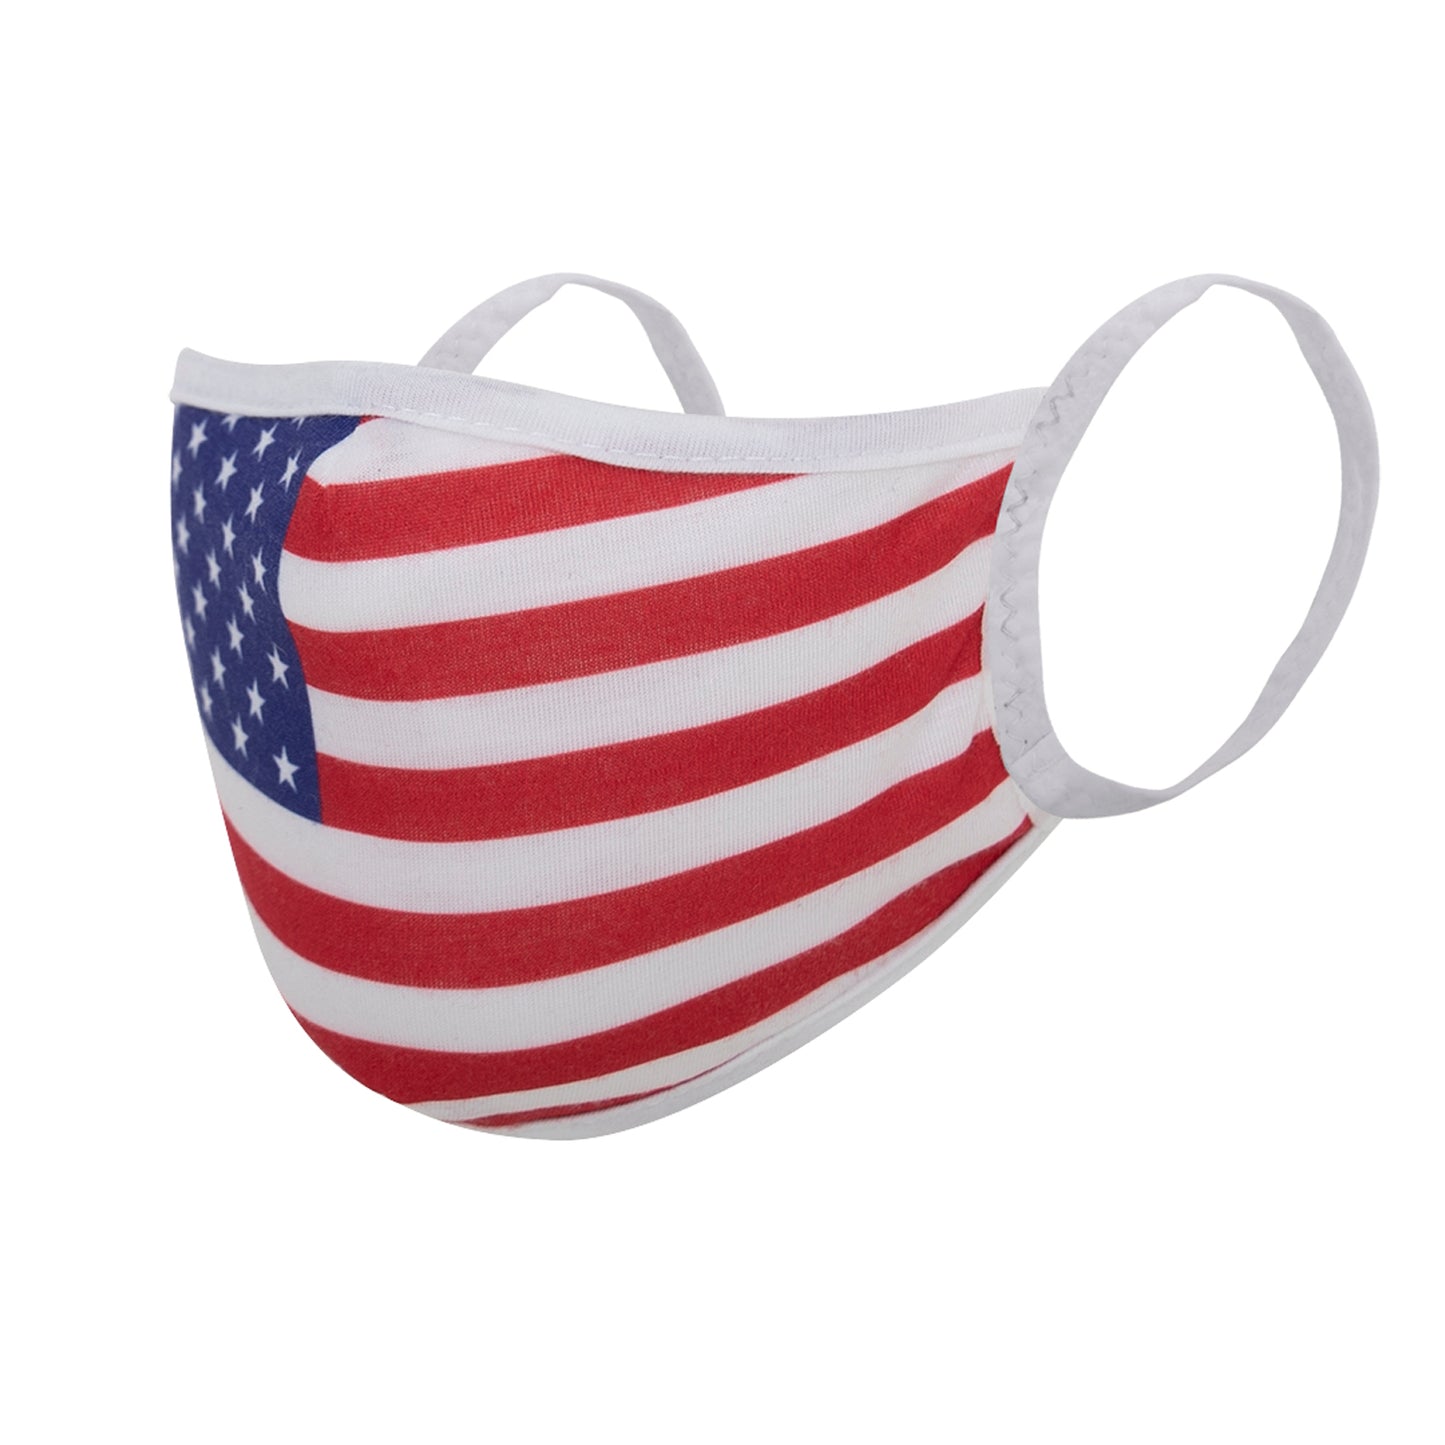 U.S. Flag Reusable 3-Layer Facemask